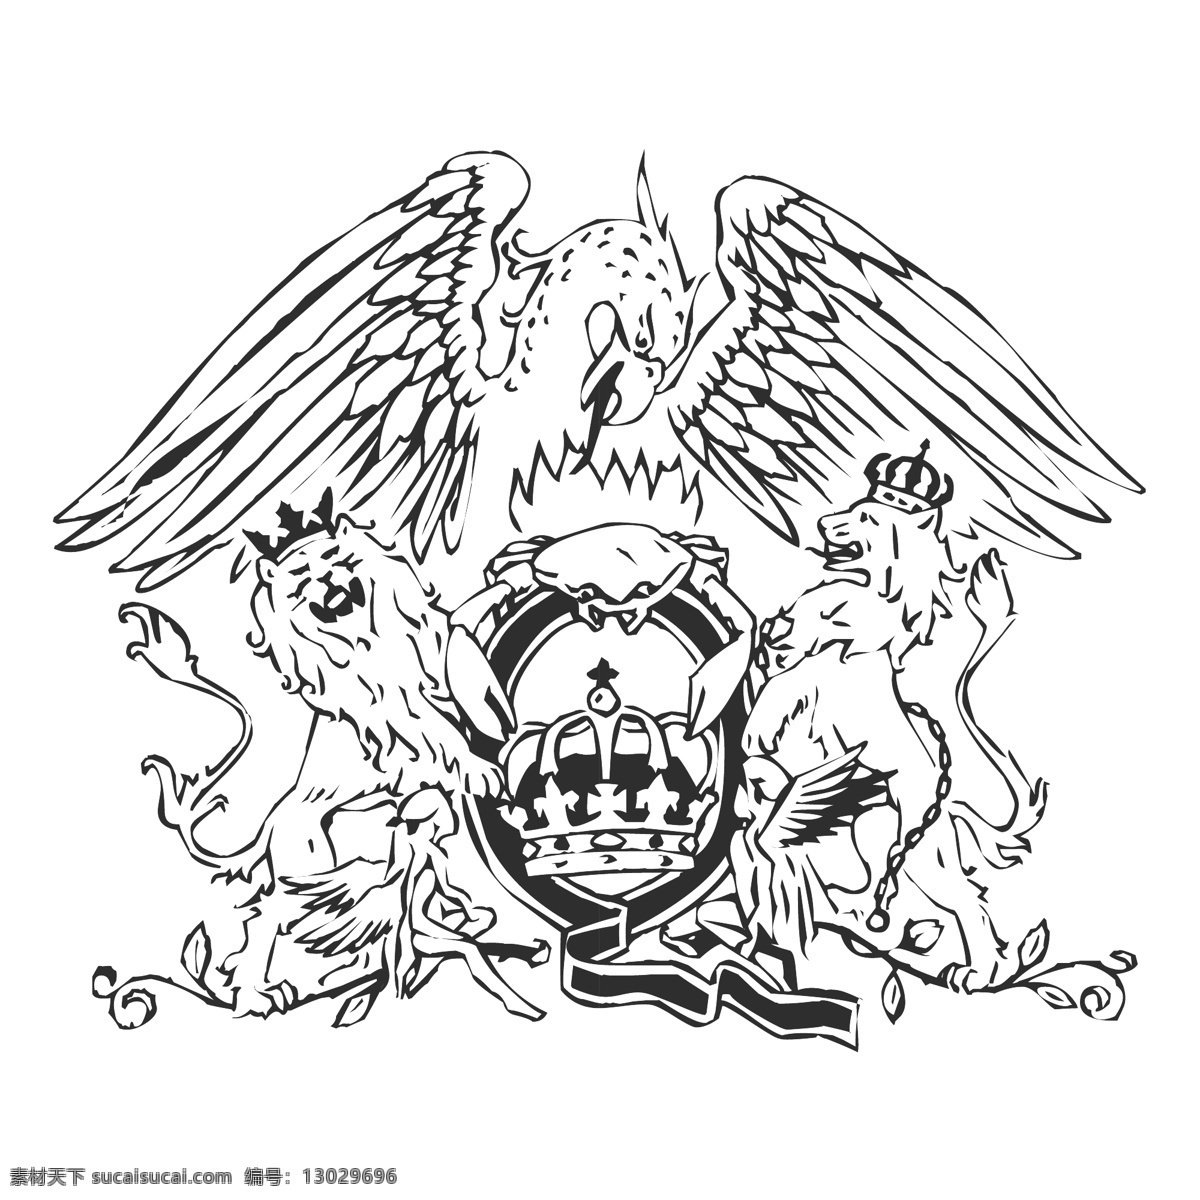 女王 嵴 校徽 校徽是免费的 psd源文件 logo设计